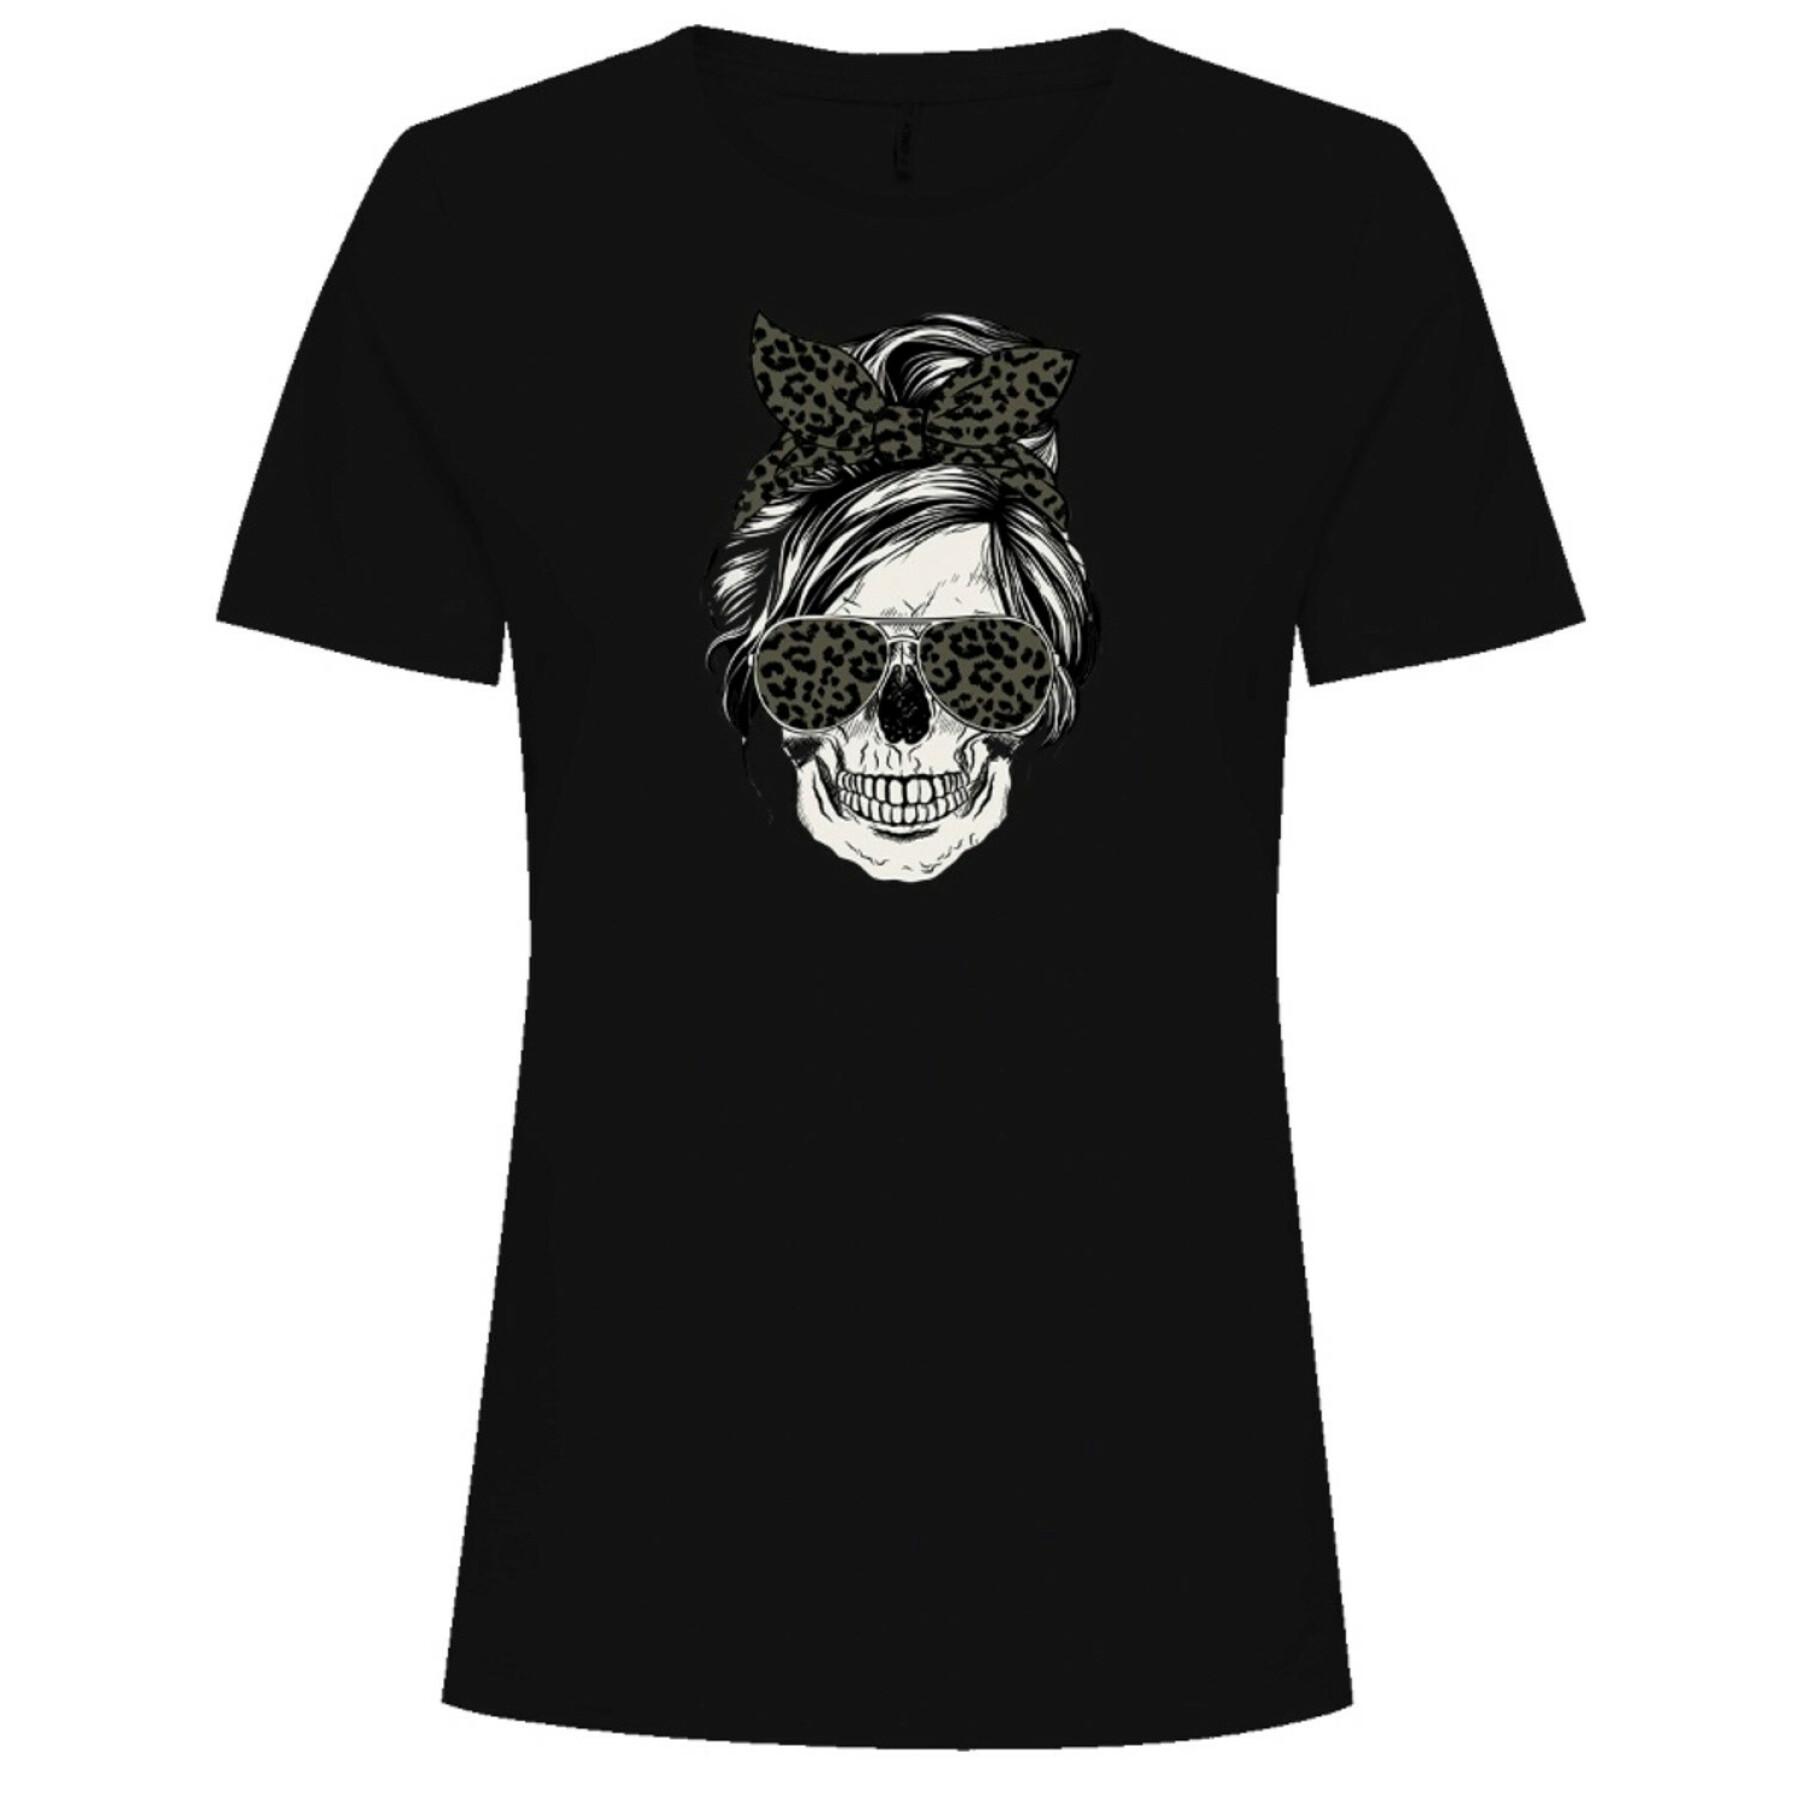 T-shirt femme Only Skull Top